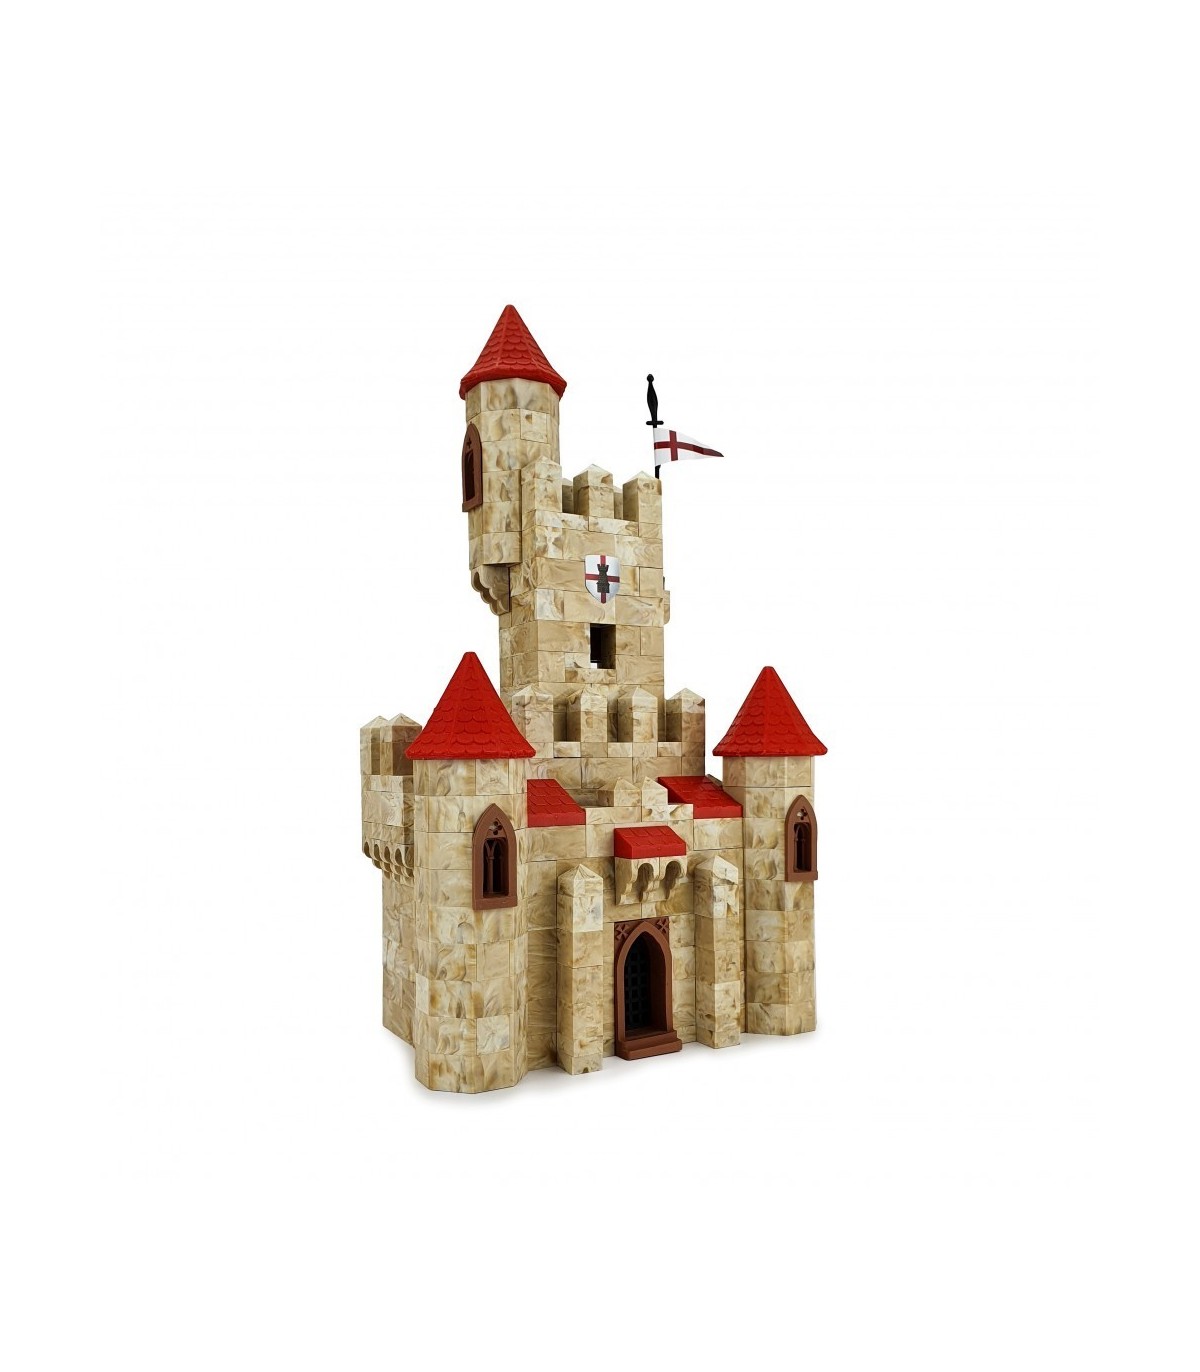 Exin Castillos medieval castle building toy